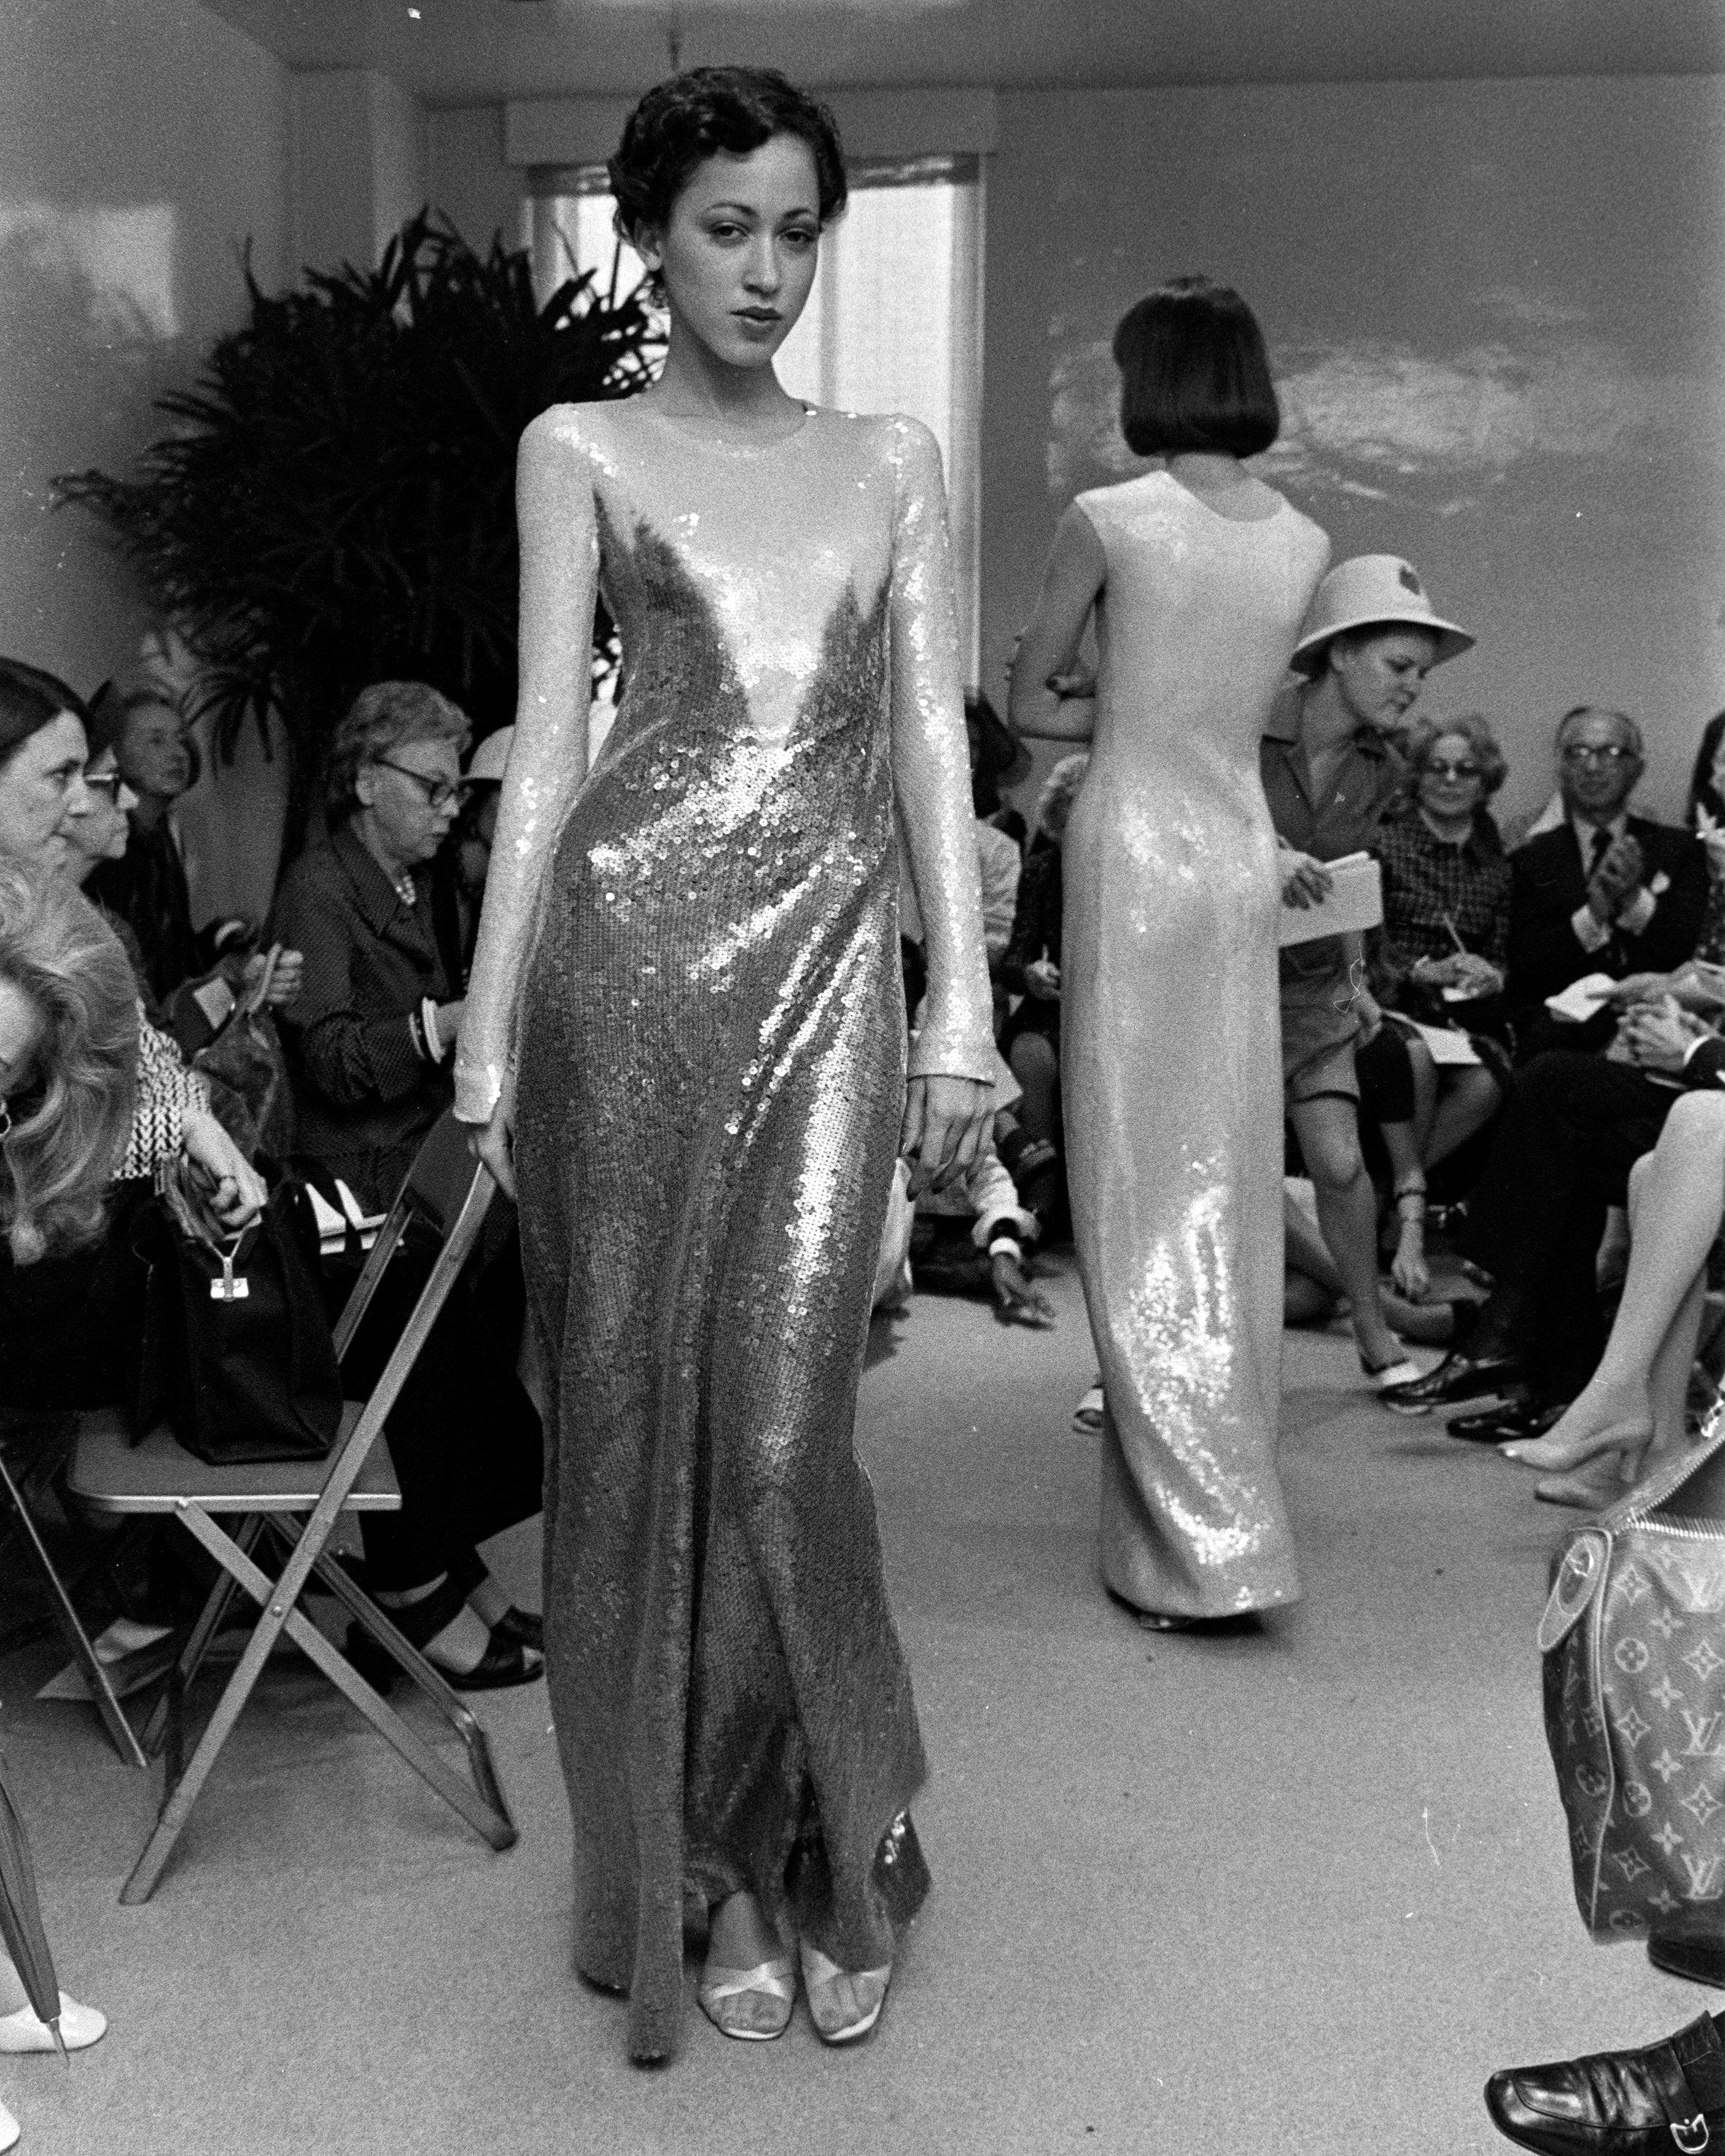 A/W 1973 Halston Oil Slick Spitzmuster Langarm-Paillettenkleid. Langärmeliges Kleid mit Rundhalsausschnitt und extrem seltenem Paillettenbesatz. Ecru schillerndes Oberteil mit dunkelviolett-blauem Unterteil, das an der Büste eine geometrische